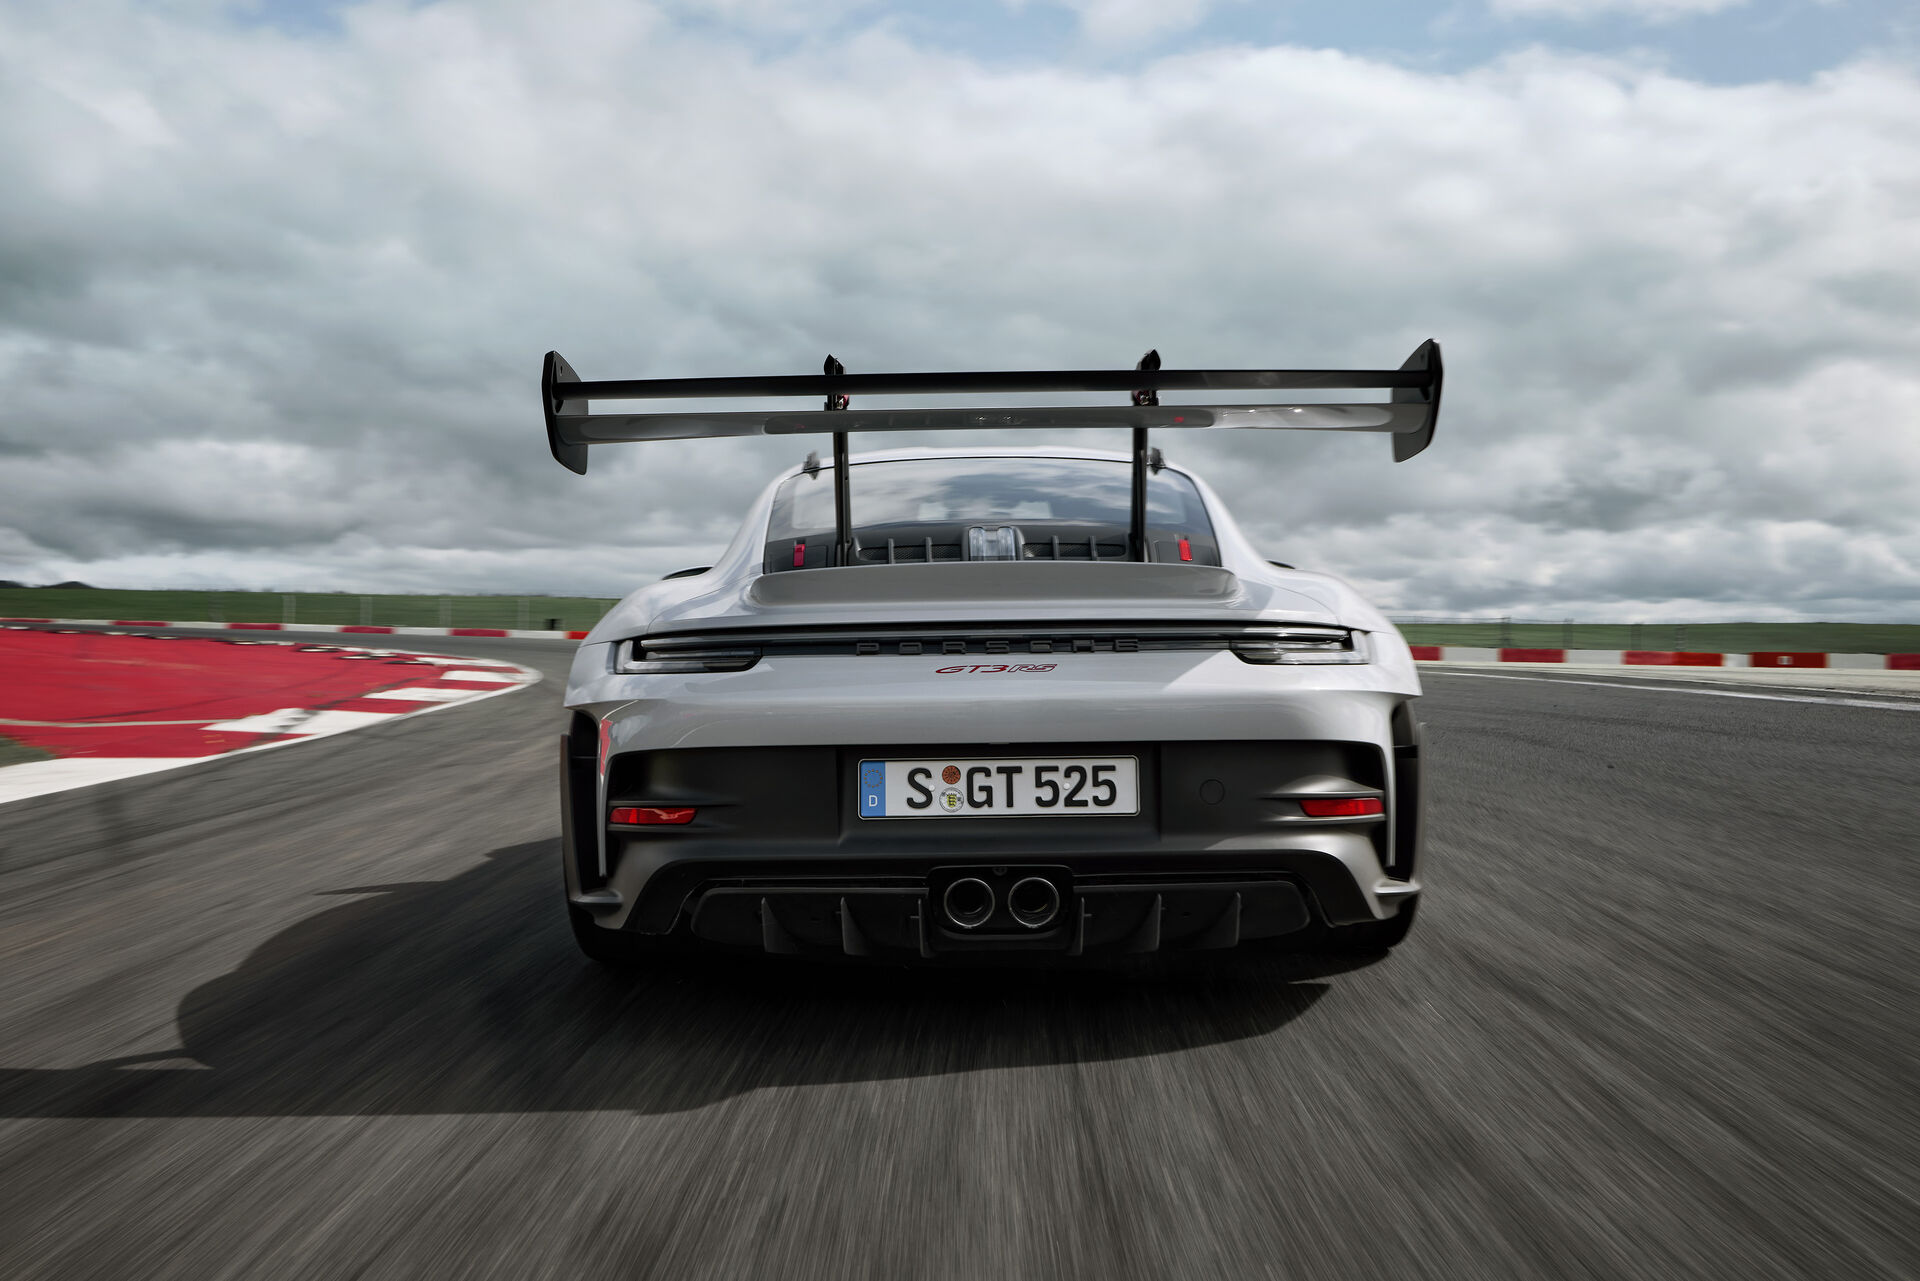 La Porsche 911 GT3 RS a été élue meilleure voiture de sport par Motorsport  Magazine ! - MOTORS ACTU